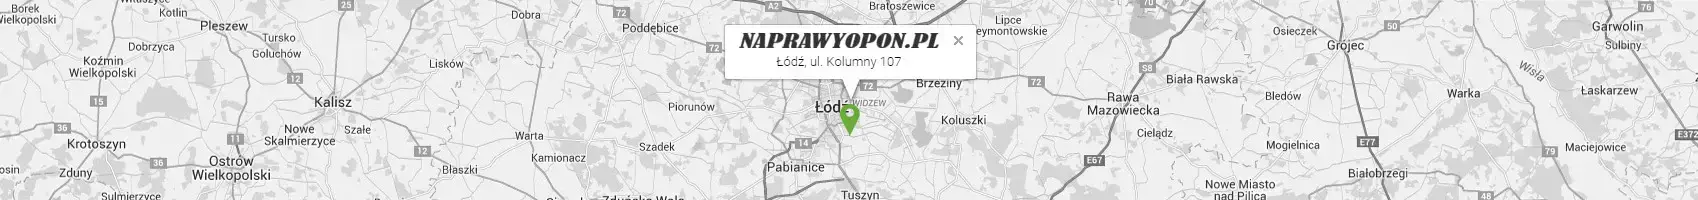 Mapa dojazdowa do naprawyopon.pl